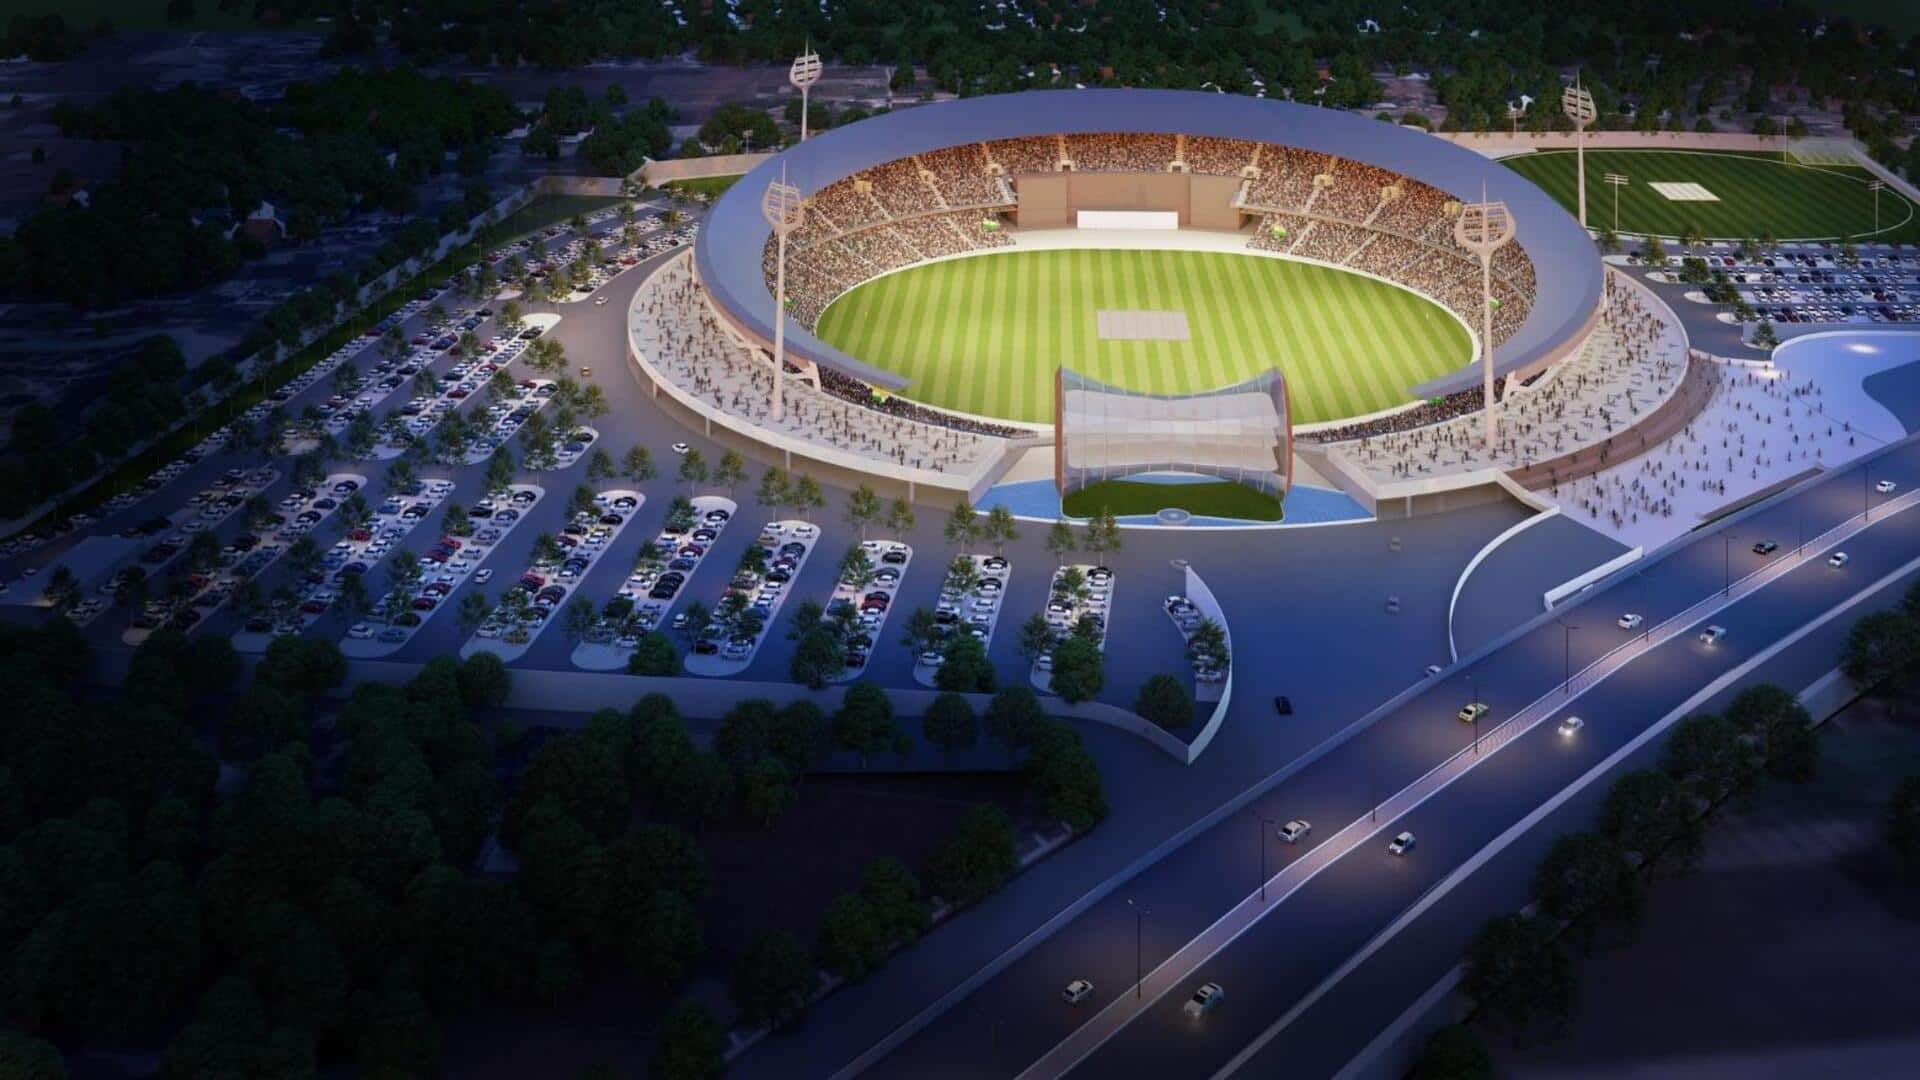 प्रधानमंत्री नरेंद्र मोदी ने वाराणसी में रखी क्रिकेट स्टेडियम की आधारशिला, 451 करोड़ है इसकी लागत